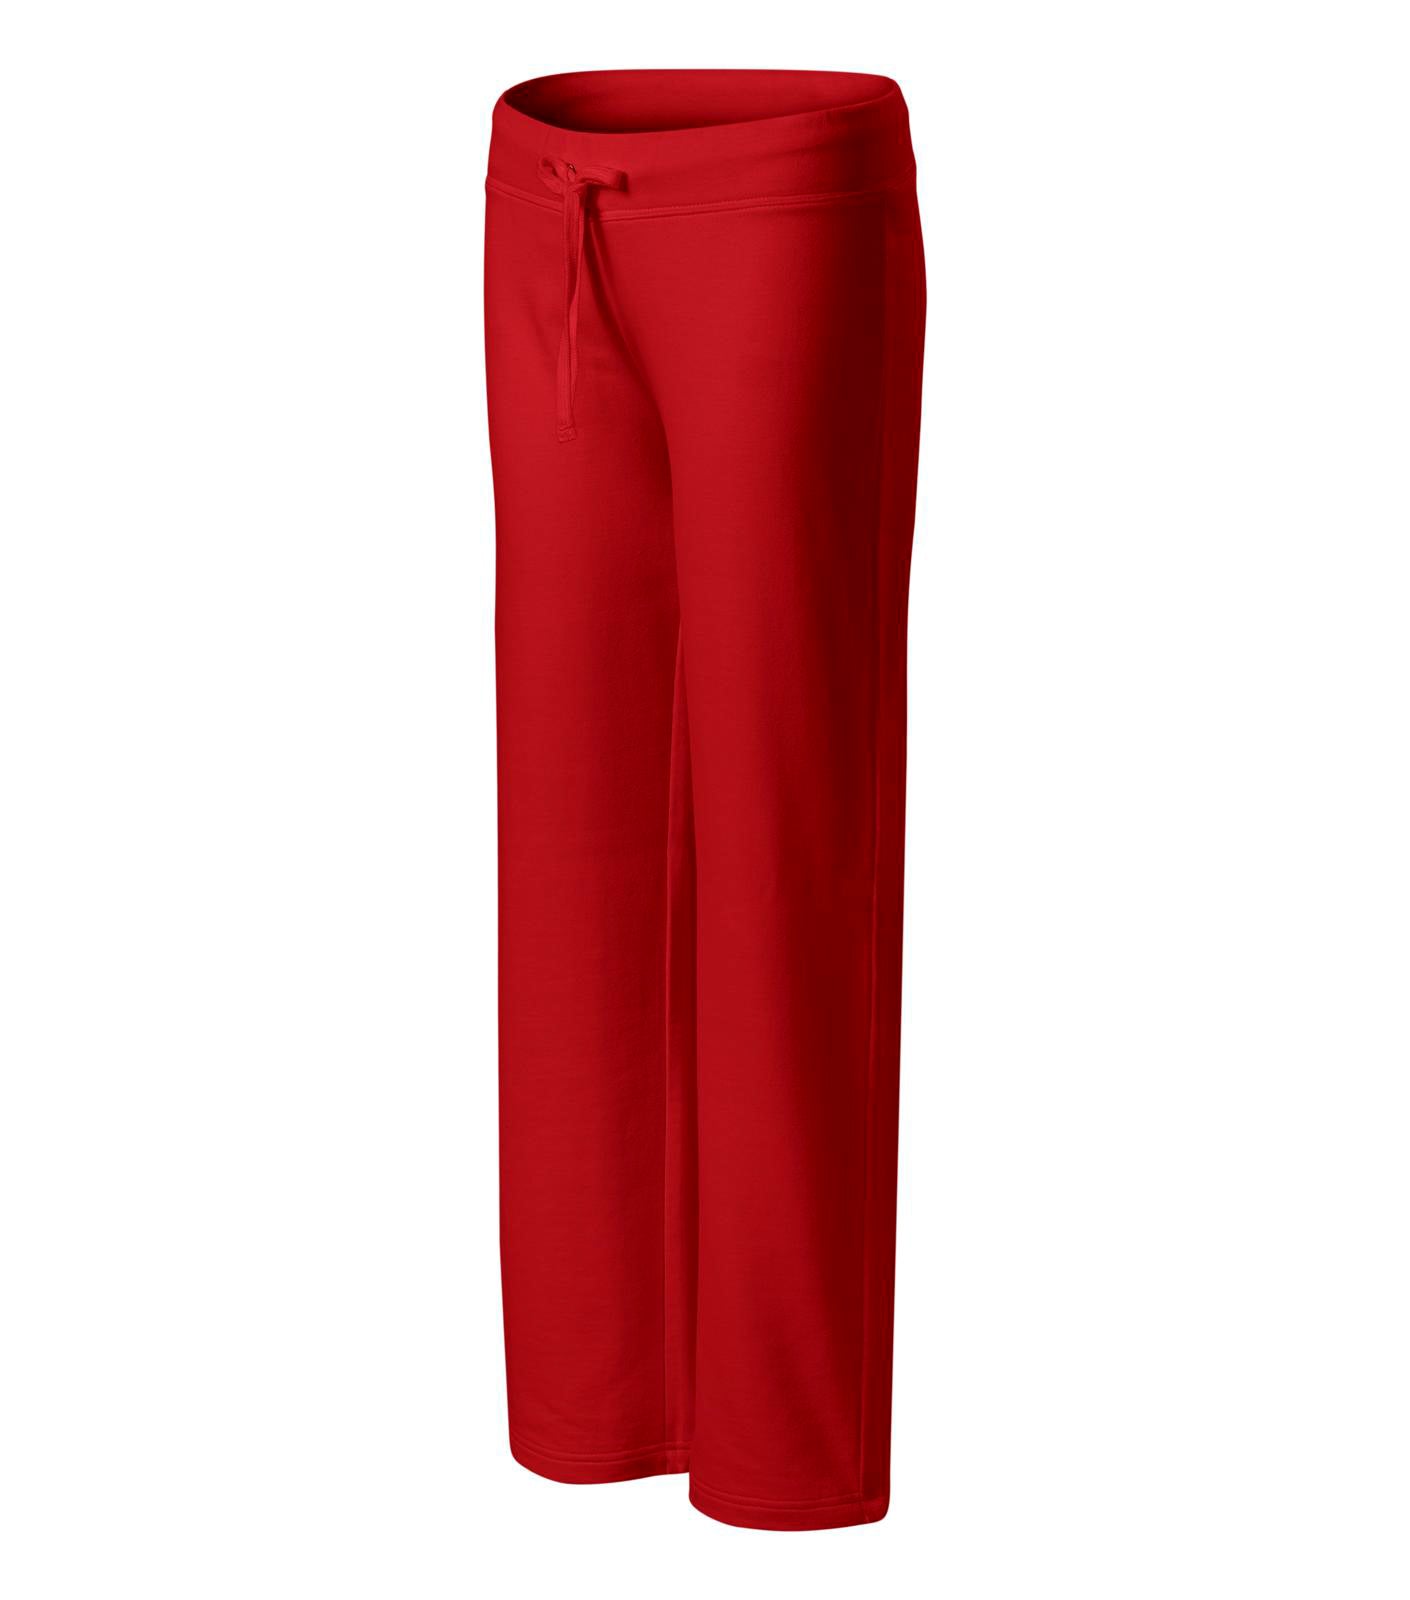 Pantaloni pentru femei in diferite culori si dimensiuni B 1018